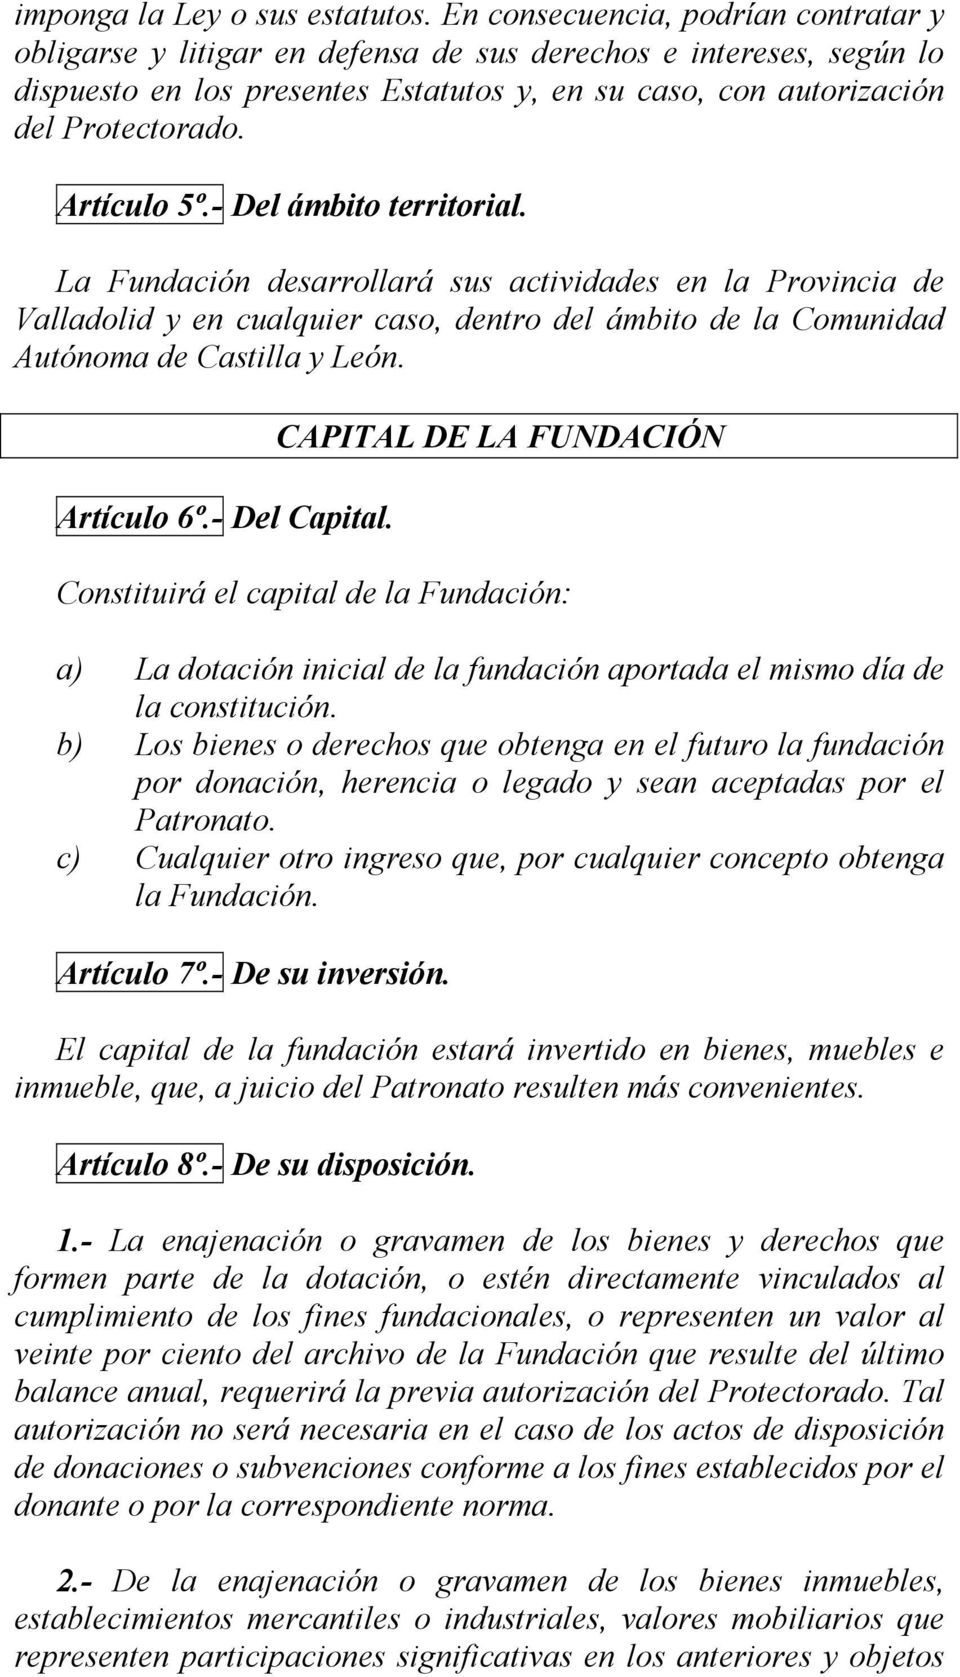 Artículo 5º.- Del ámbito territorial. La Fundación desarrollará sus actividades en la Provincia de Valladolid y en cualquier caso, dentro del ámbito de la Comunidad Autónoma de Castilla y León.